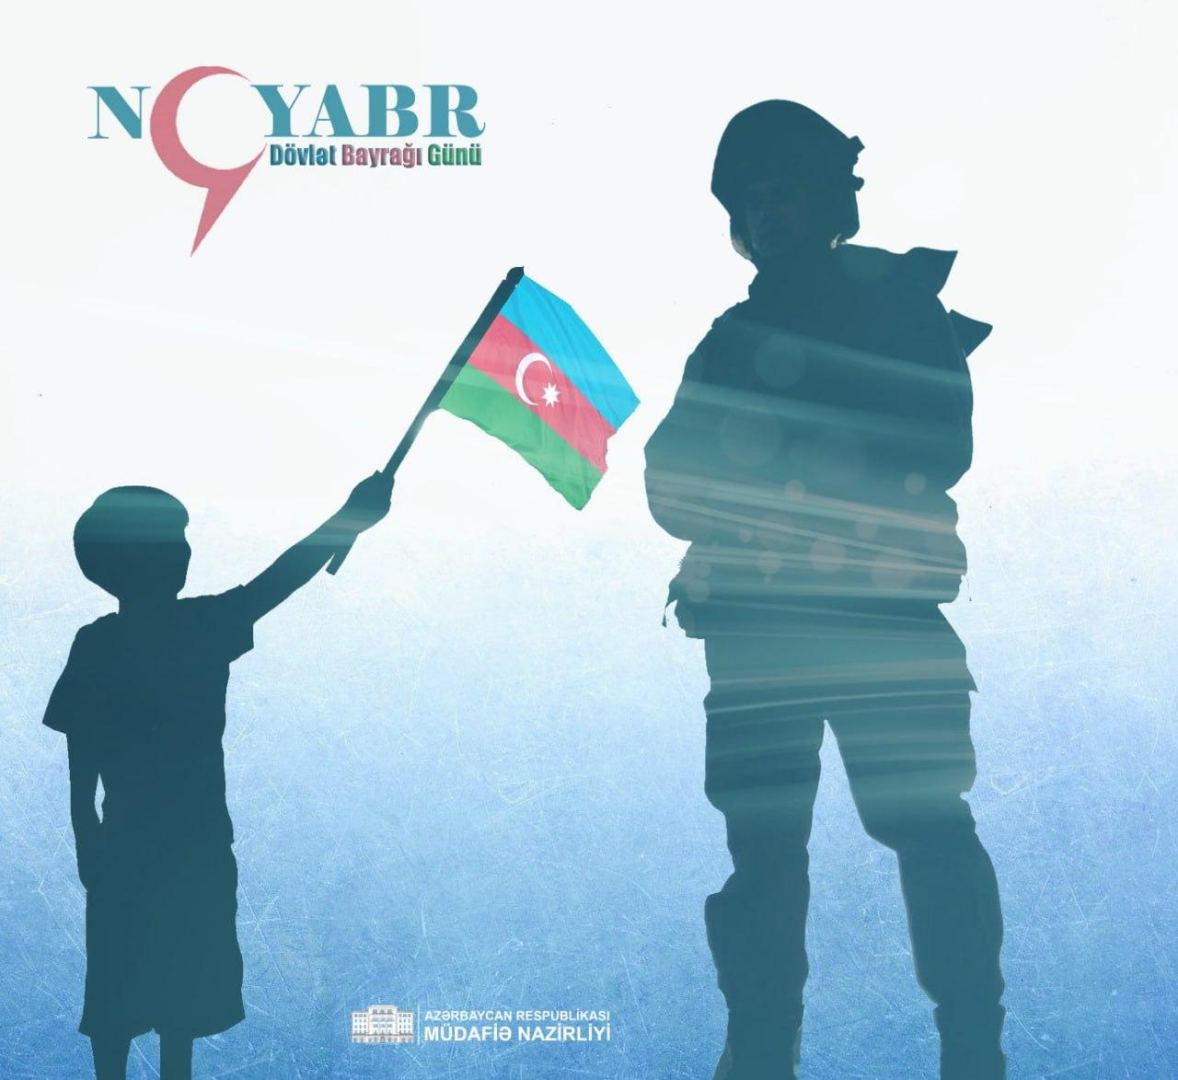 Минобороны Азербайджана поделилось публикацией по случаю 9 ноября - Дня Государственного флага (ФОТО)